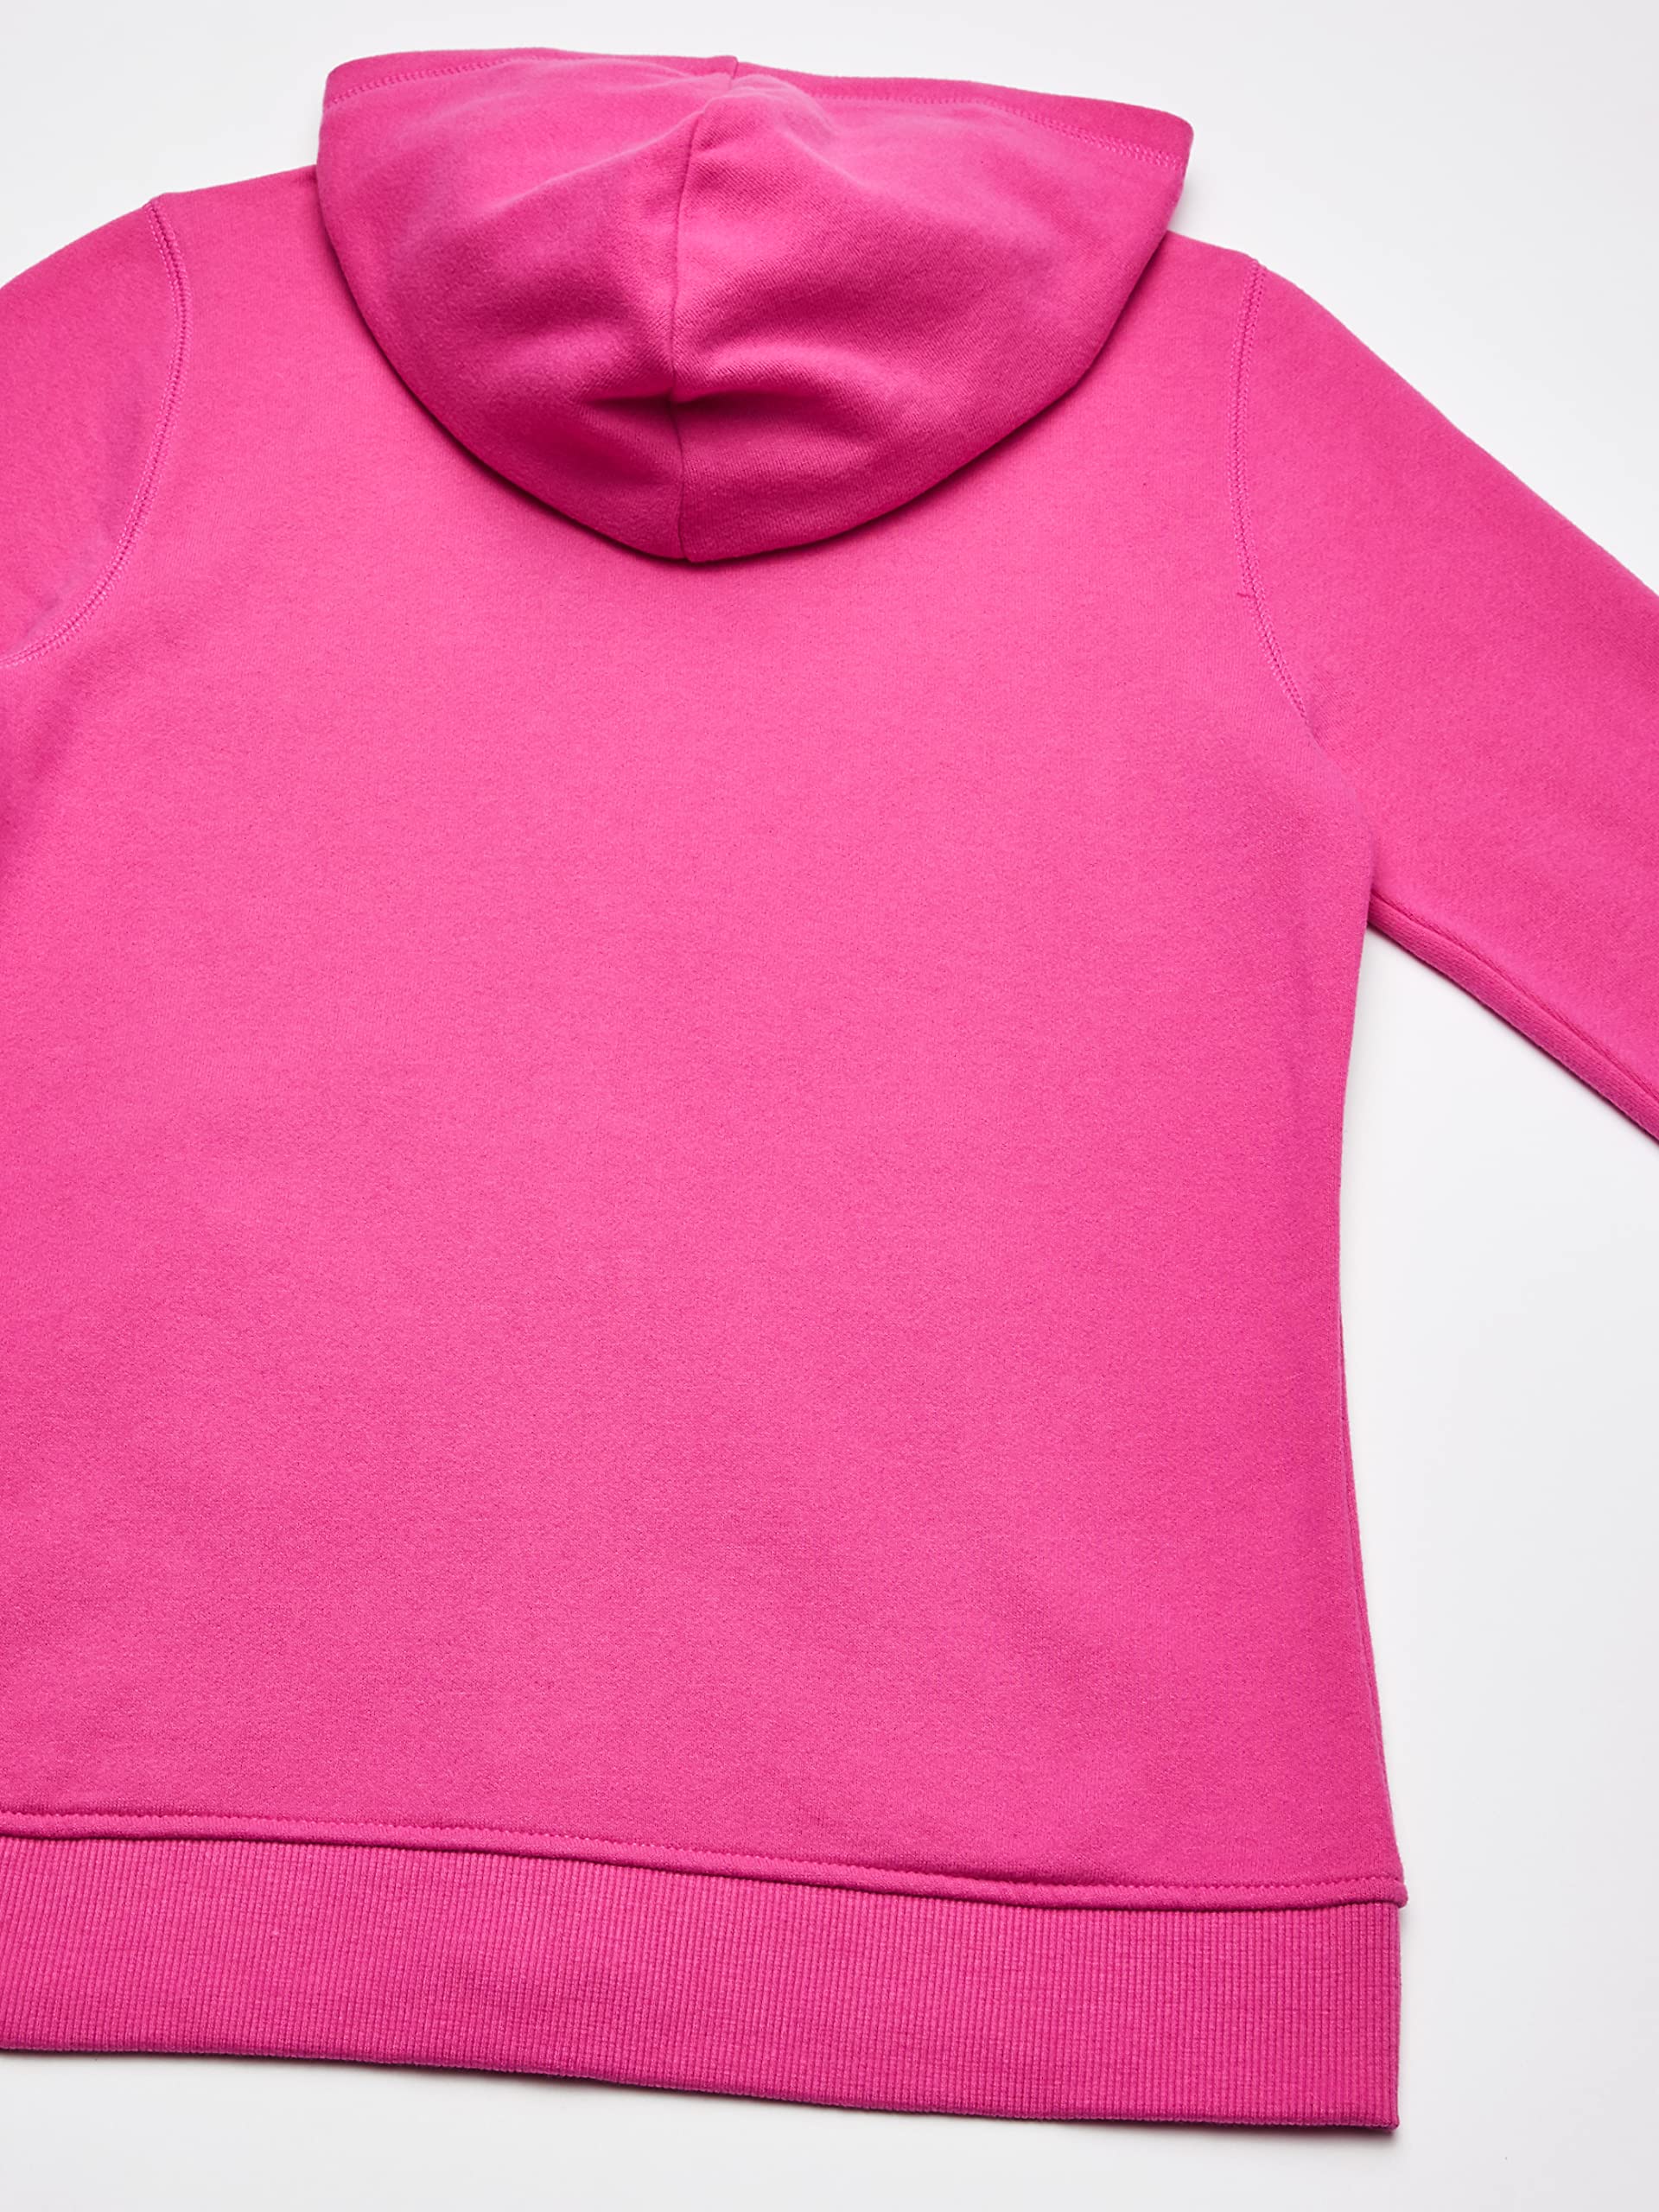 Nautica Girls' Fleece Full-Zip Hoodie Sweatshirt